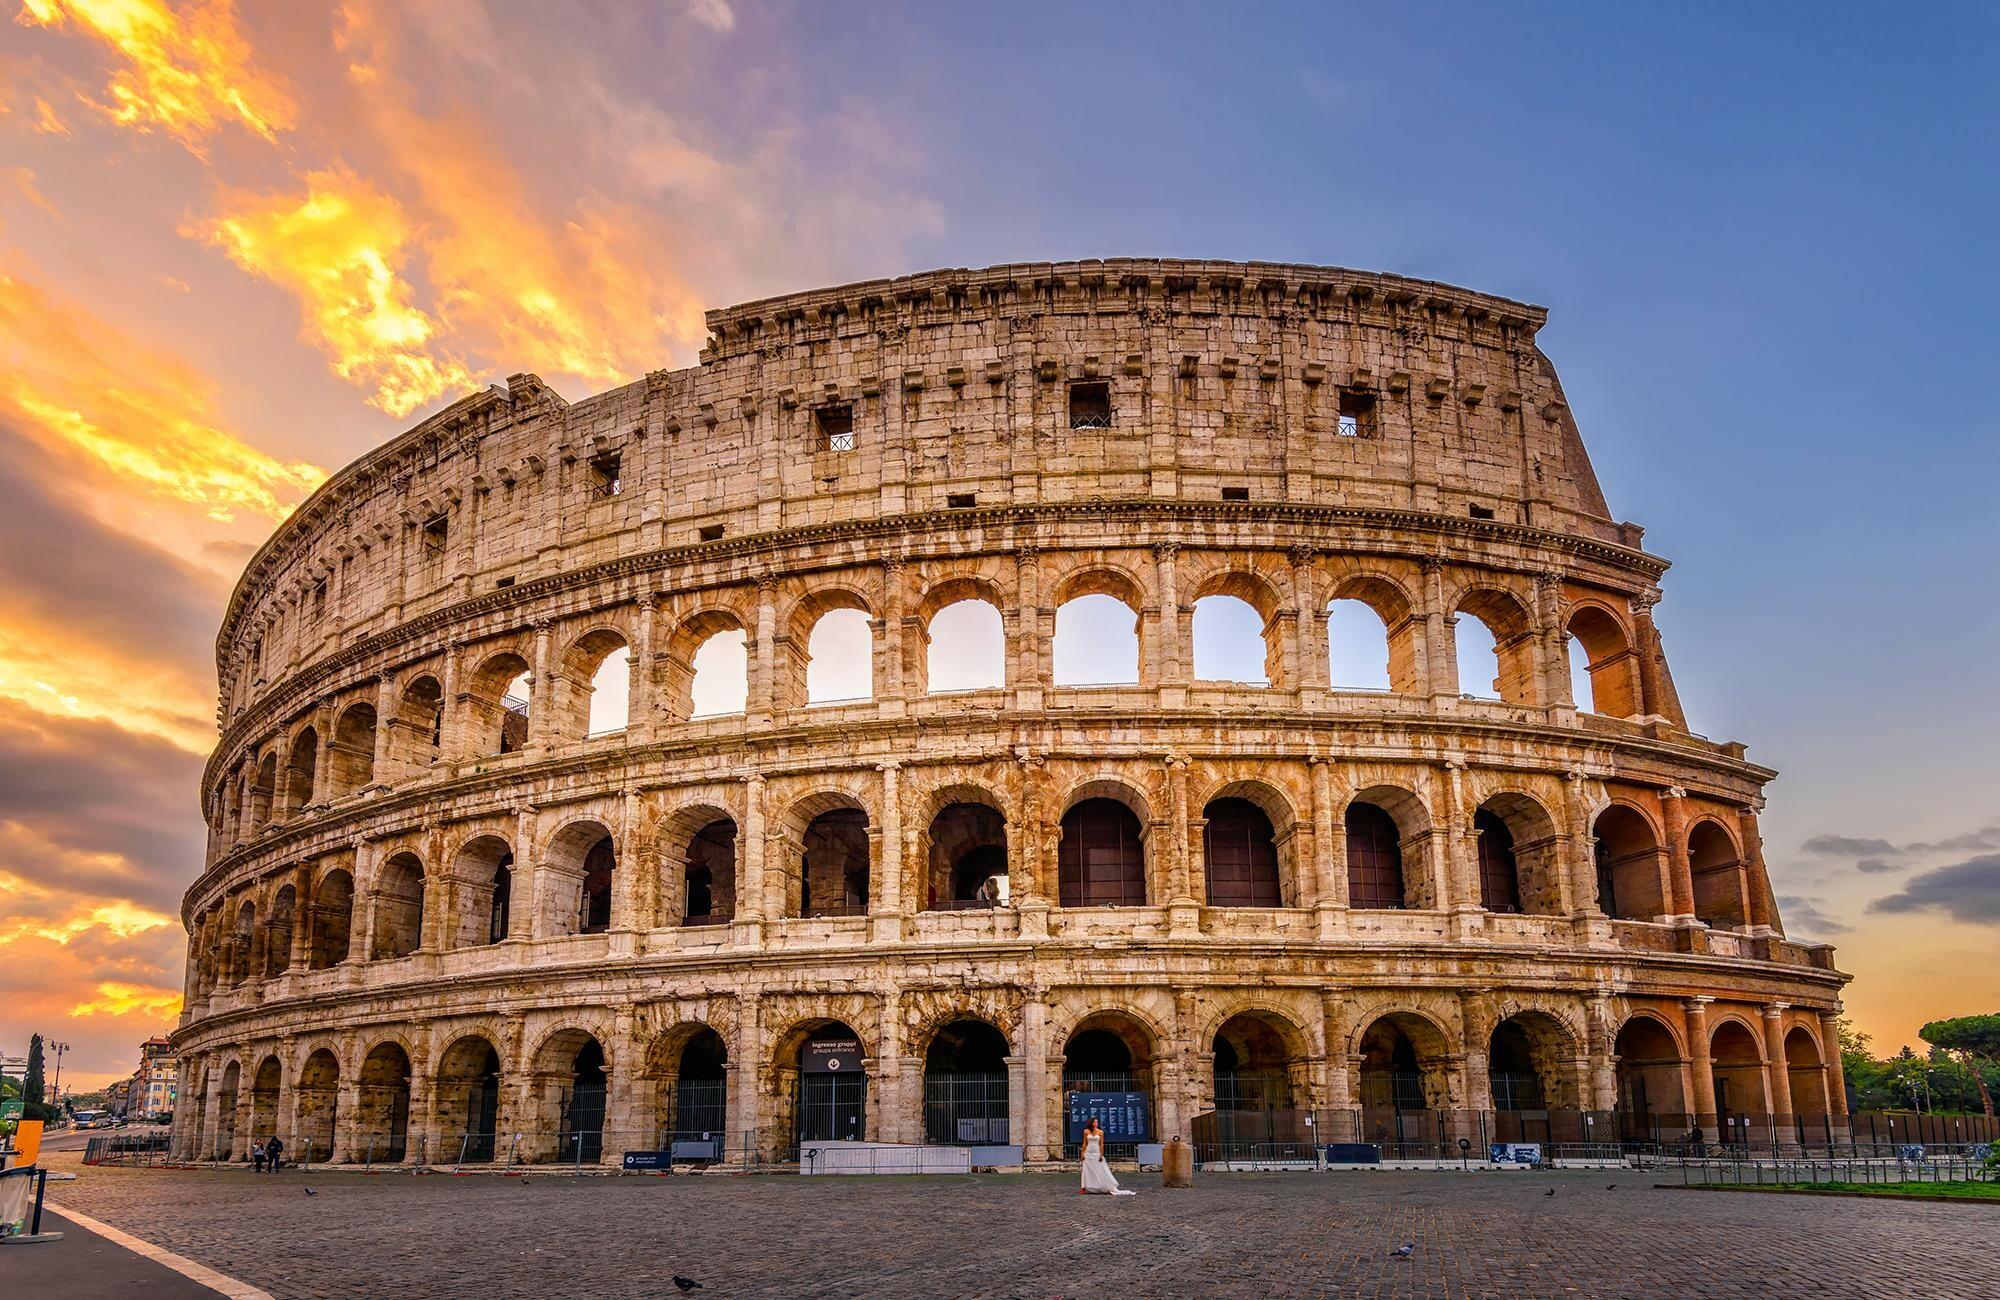 Công trình kiến trúc to lớn và nổi tiếng bậc nhất nào là nơi diễn ra hình thức giải trí đẫm máu nhất của đế chế La Mã cổ đại?